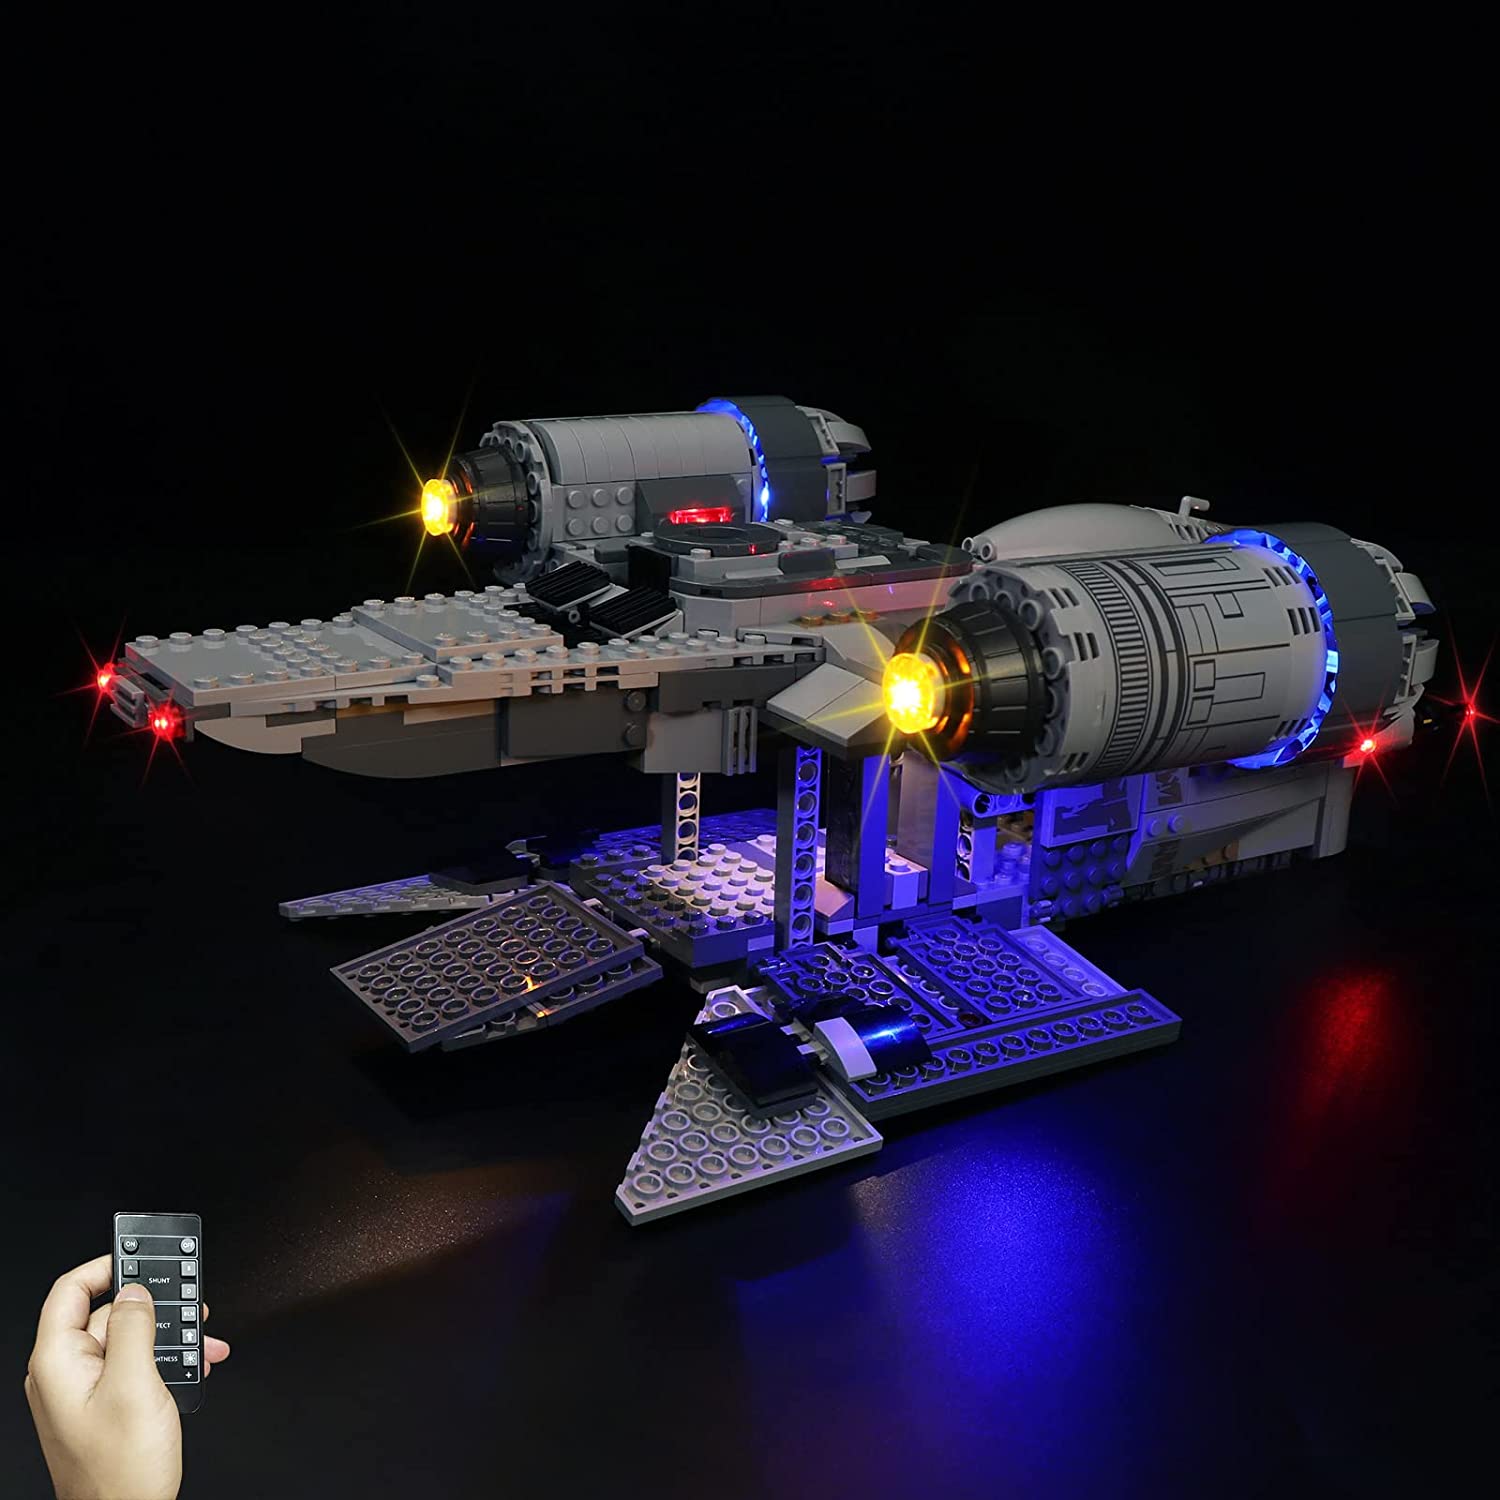 LED LIGHT KIT FOR LEGO 75292 THE RAZOR CREST STAR WARS BUILDING BRICKS KIT 